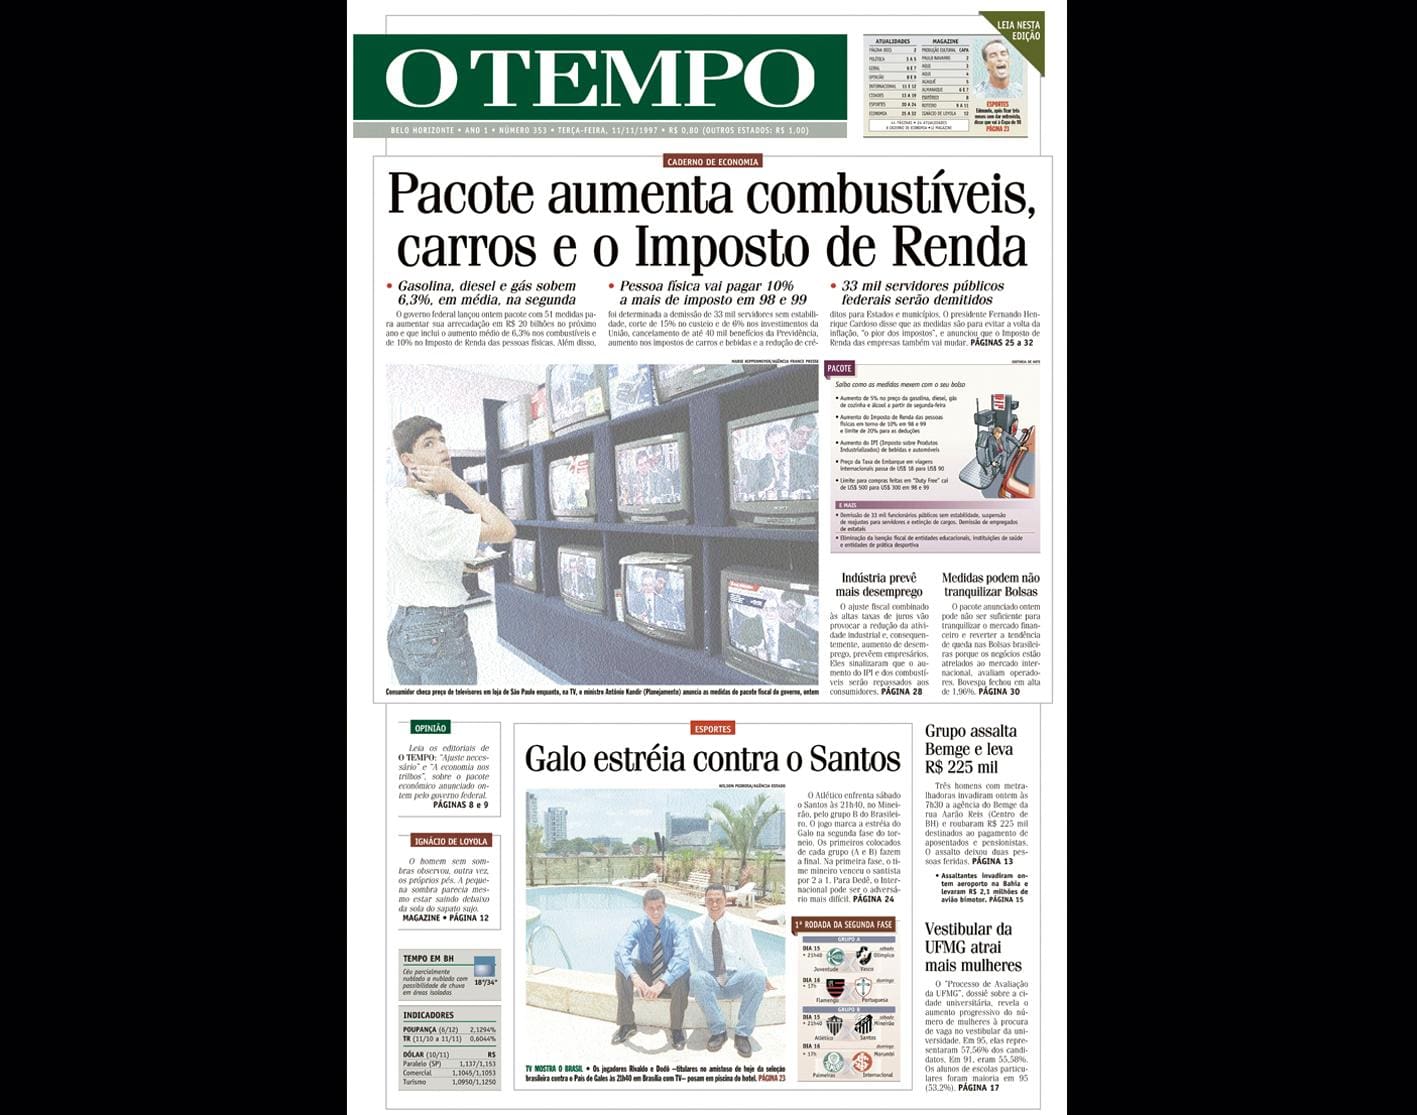 Capa do jornal O TEMPO no dia 11.11.1997; resgate do acervo marca as comemorações dos 25 anos da publicação